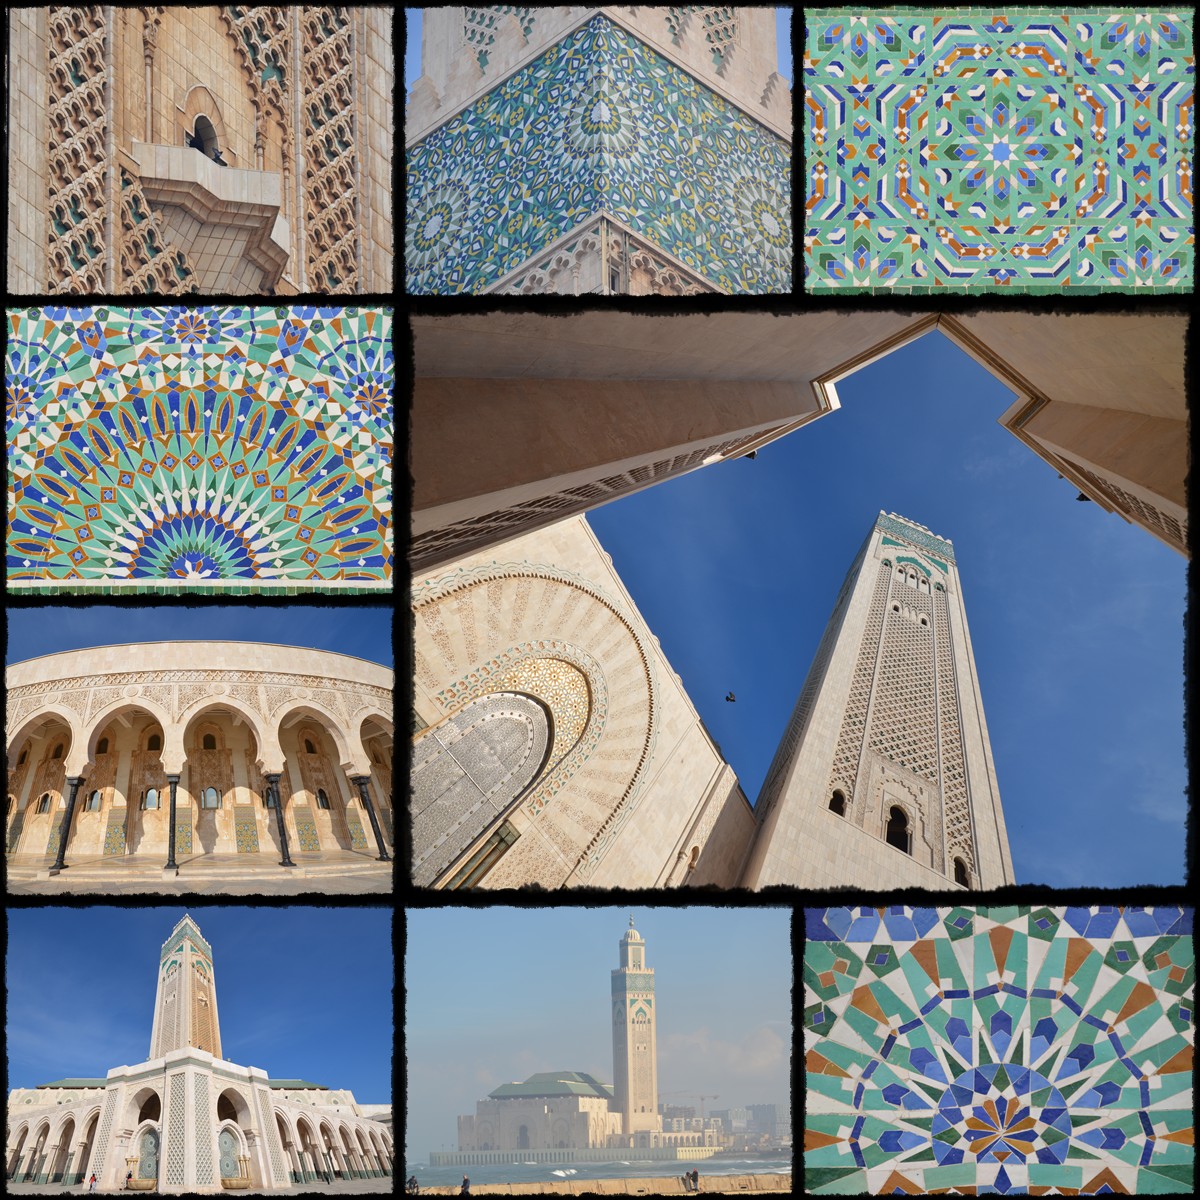 morocco, maroco, maroko, marocco, casablanca, Hassan II Mosque, meschea hassan ii